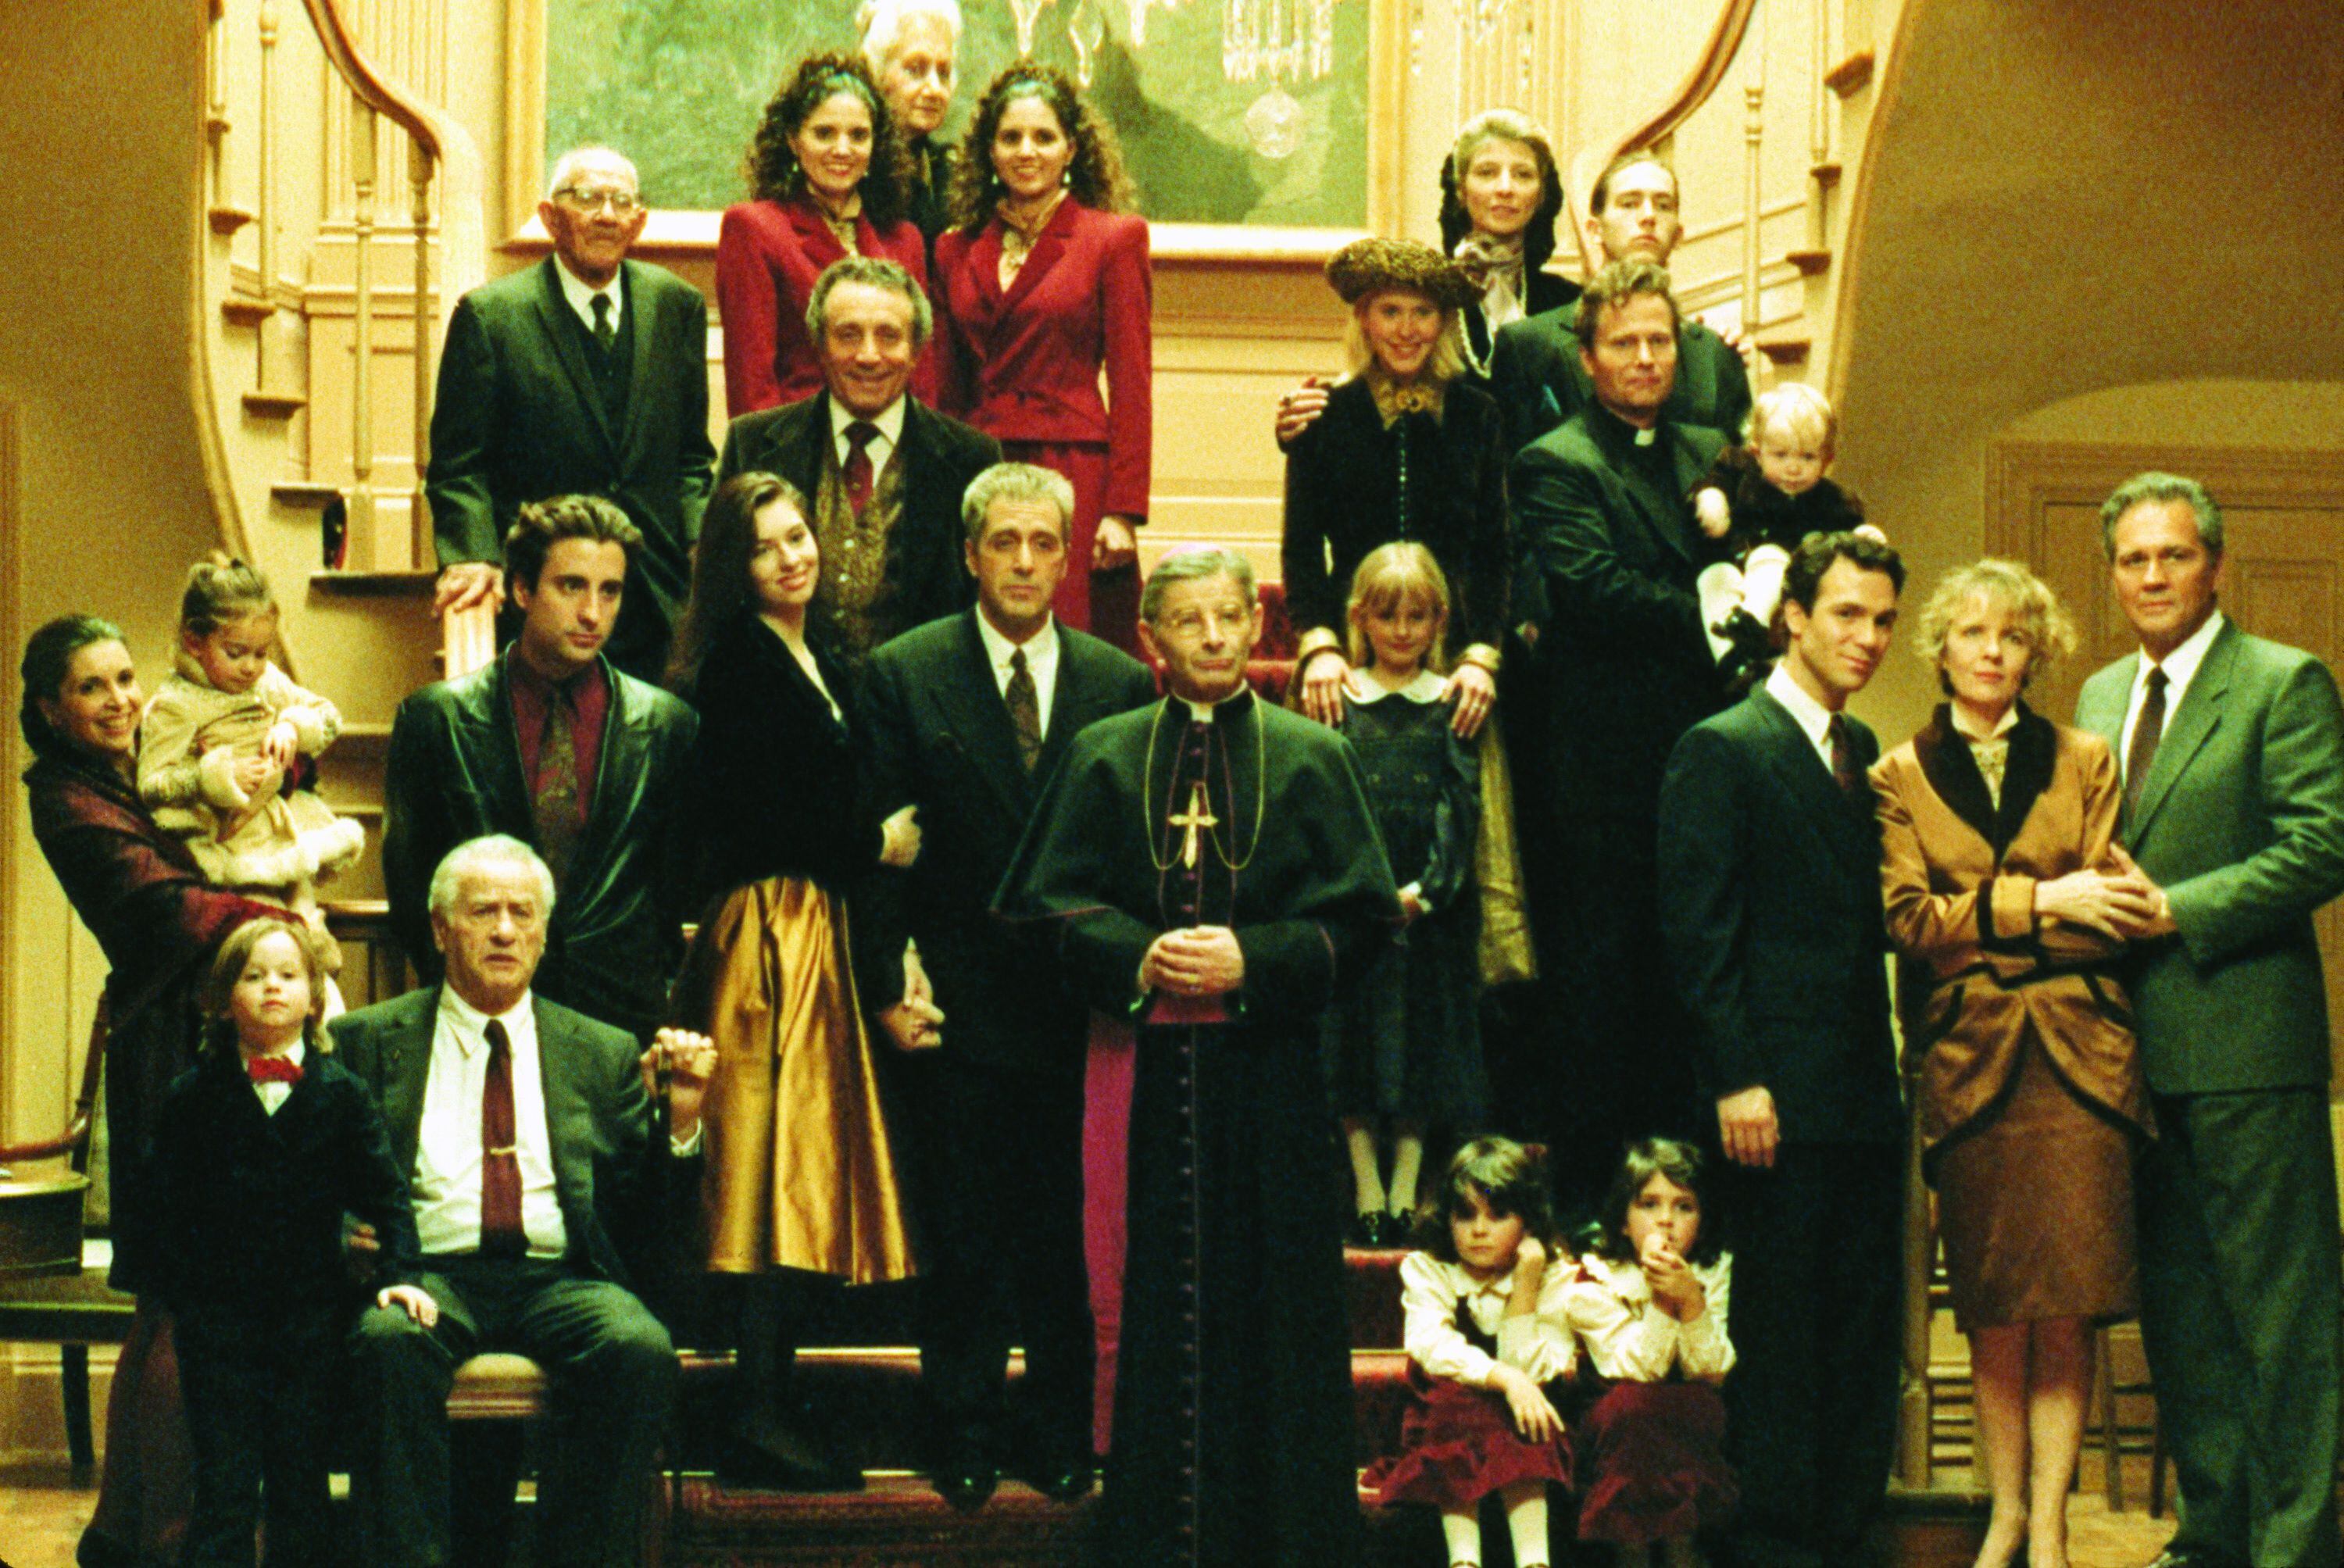 Imagen de 'El padrino III', en la que la familia Corleone posa para una foto de grupo.